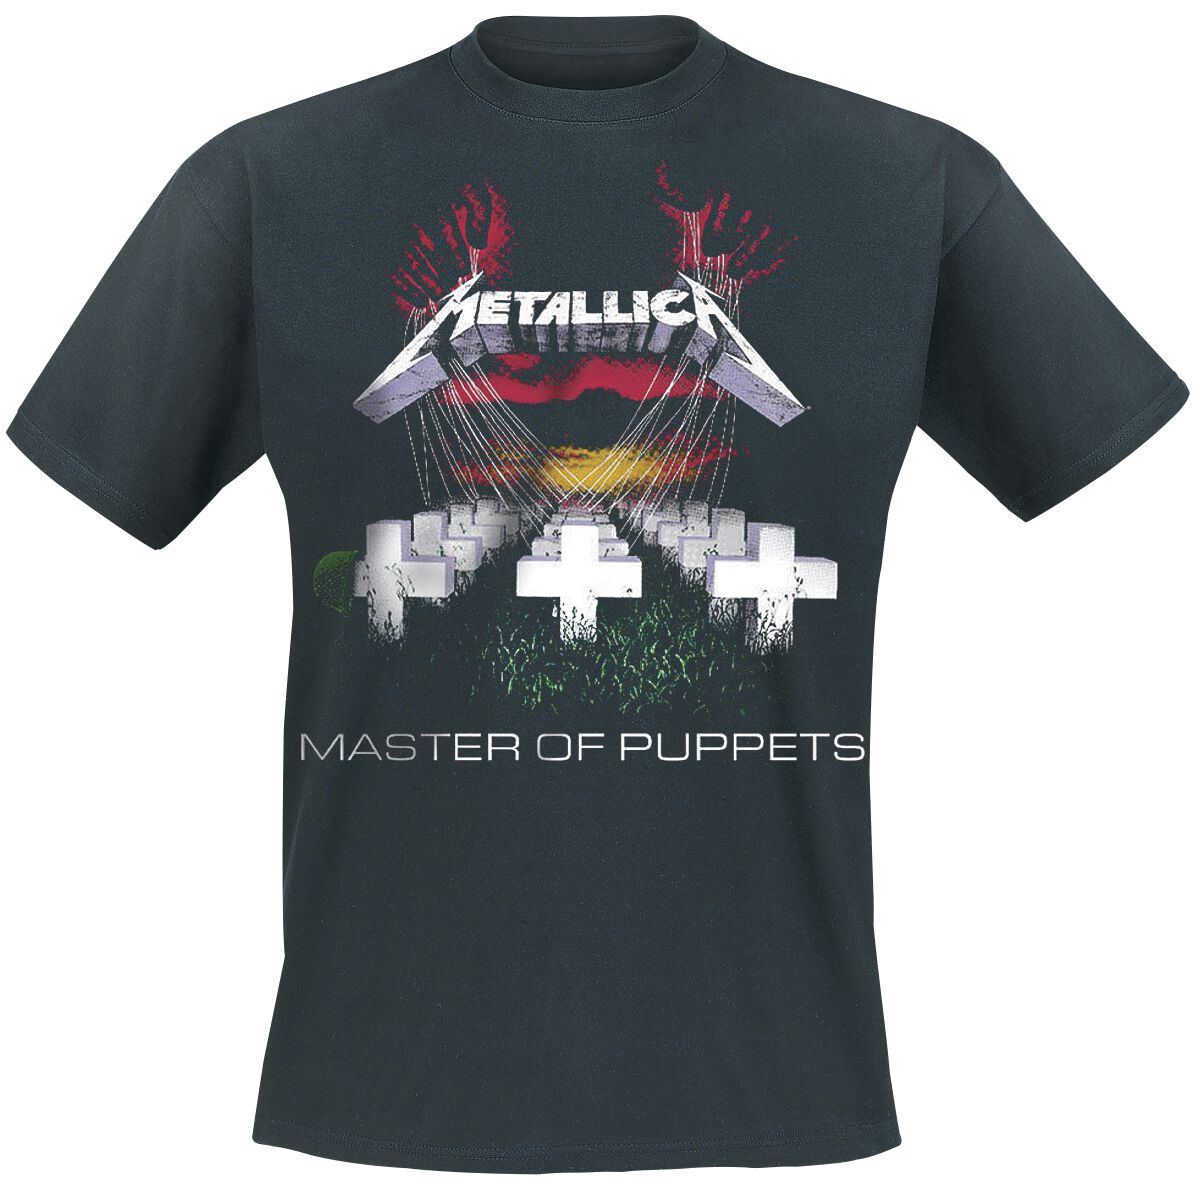 Metallica T-Shirt - Master Of Puppets - S bis 5XL - für Männer - Größe 3XL - schwarz  - Lizenziertes Merchandise!